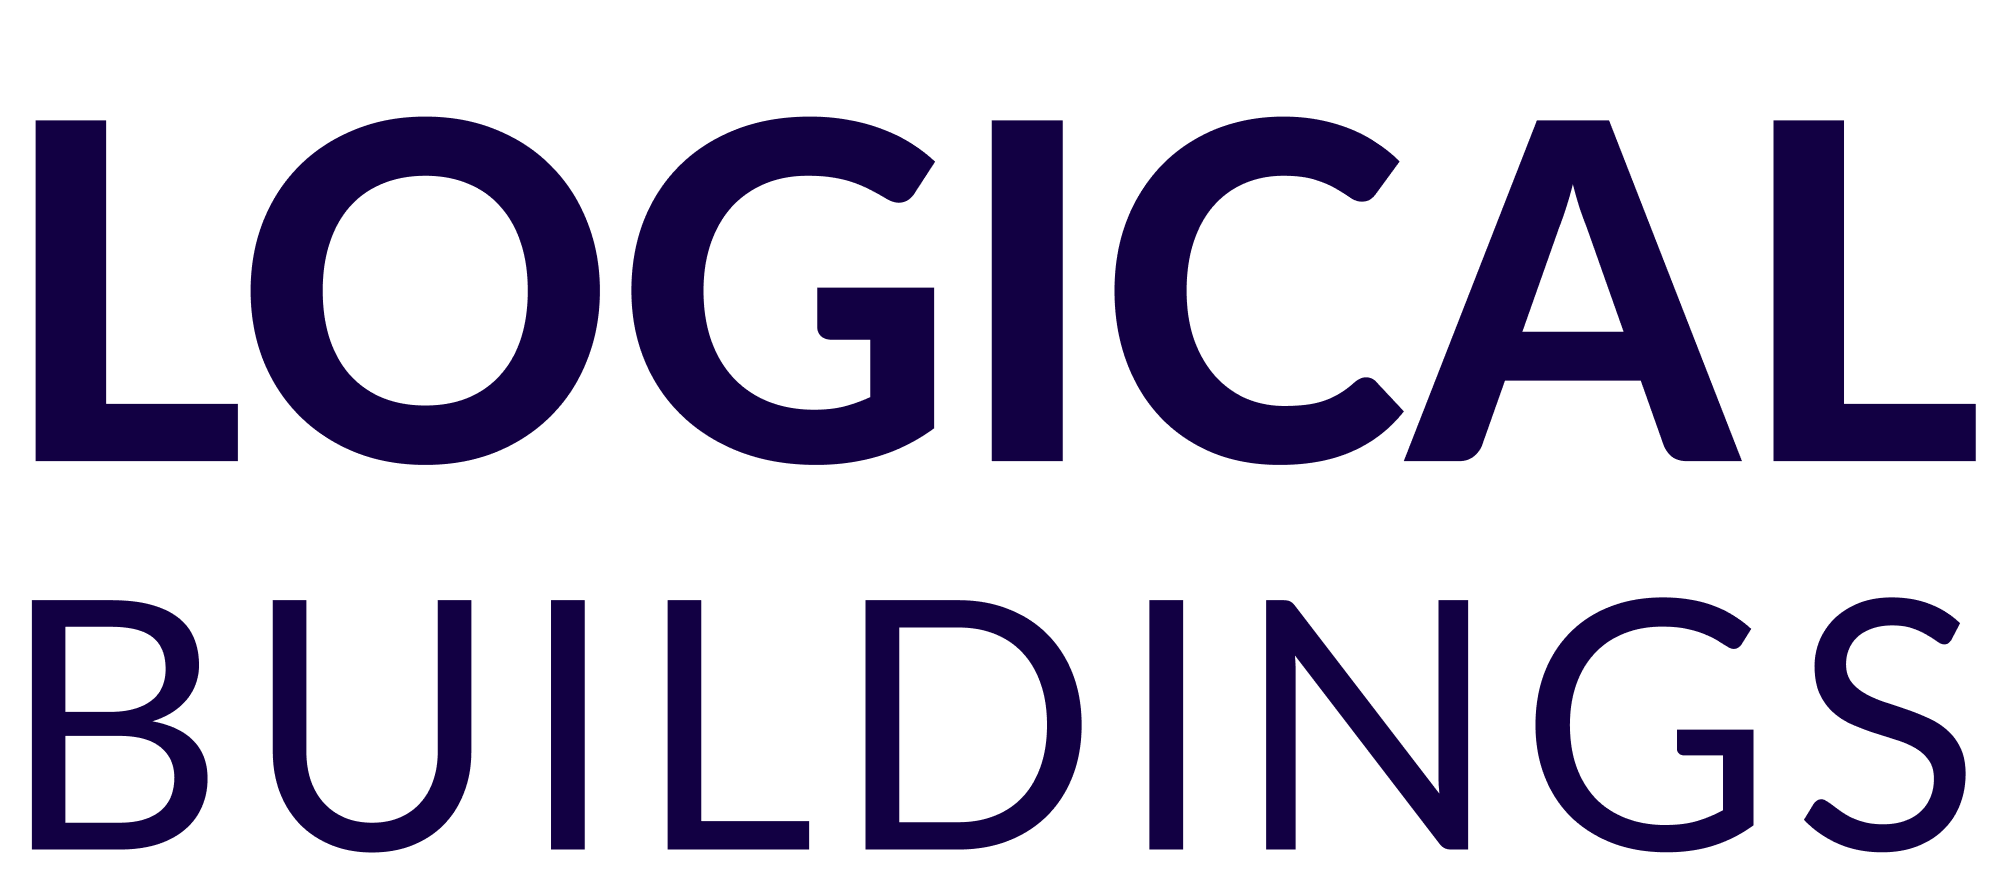 Logical Buildings Wordmark - Dark.png